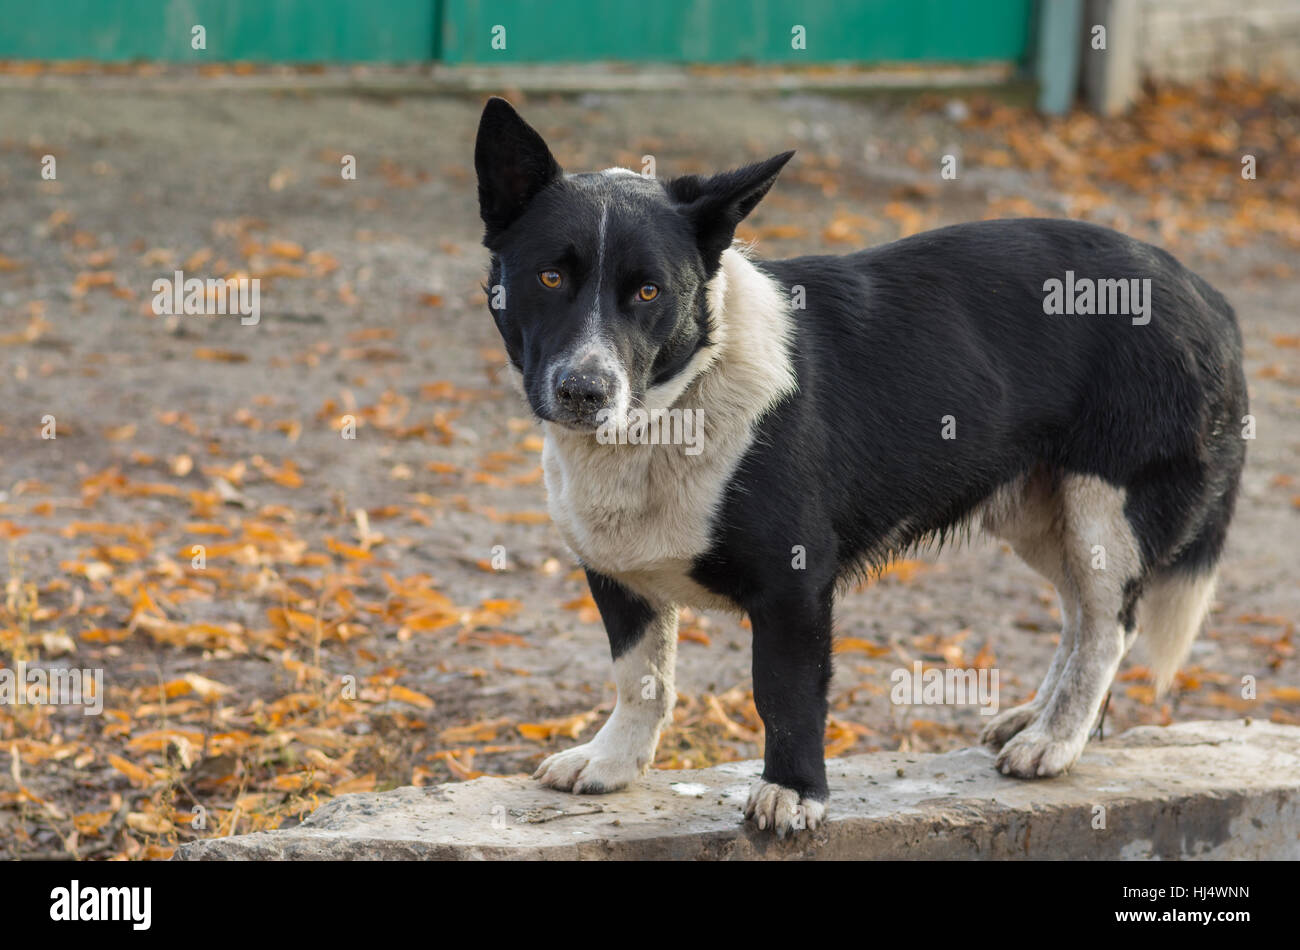 Portrait plein air de black, trapu, mixed breed dog prête à défendre son territoire Banque D'Images